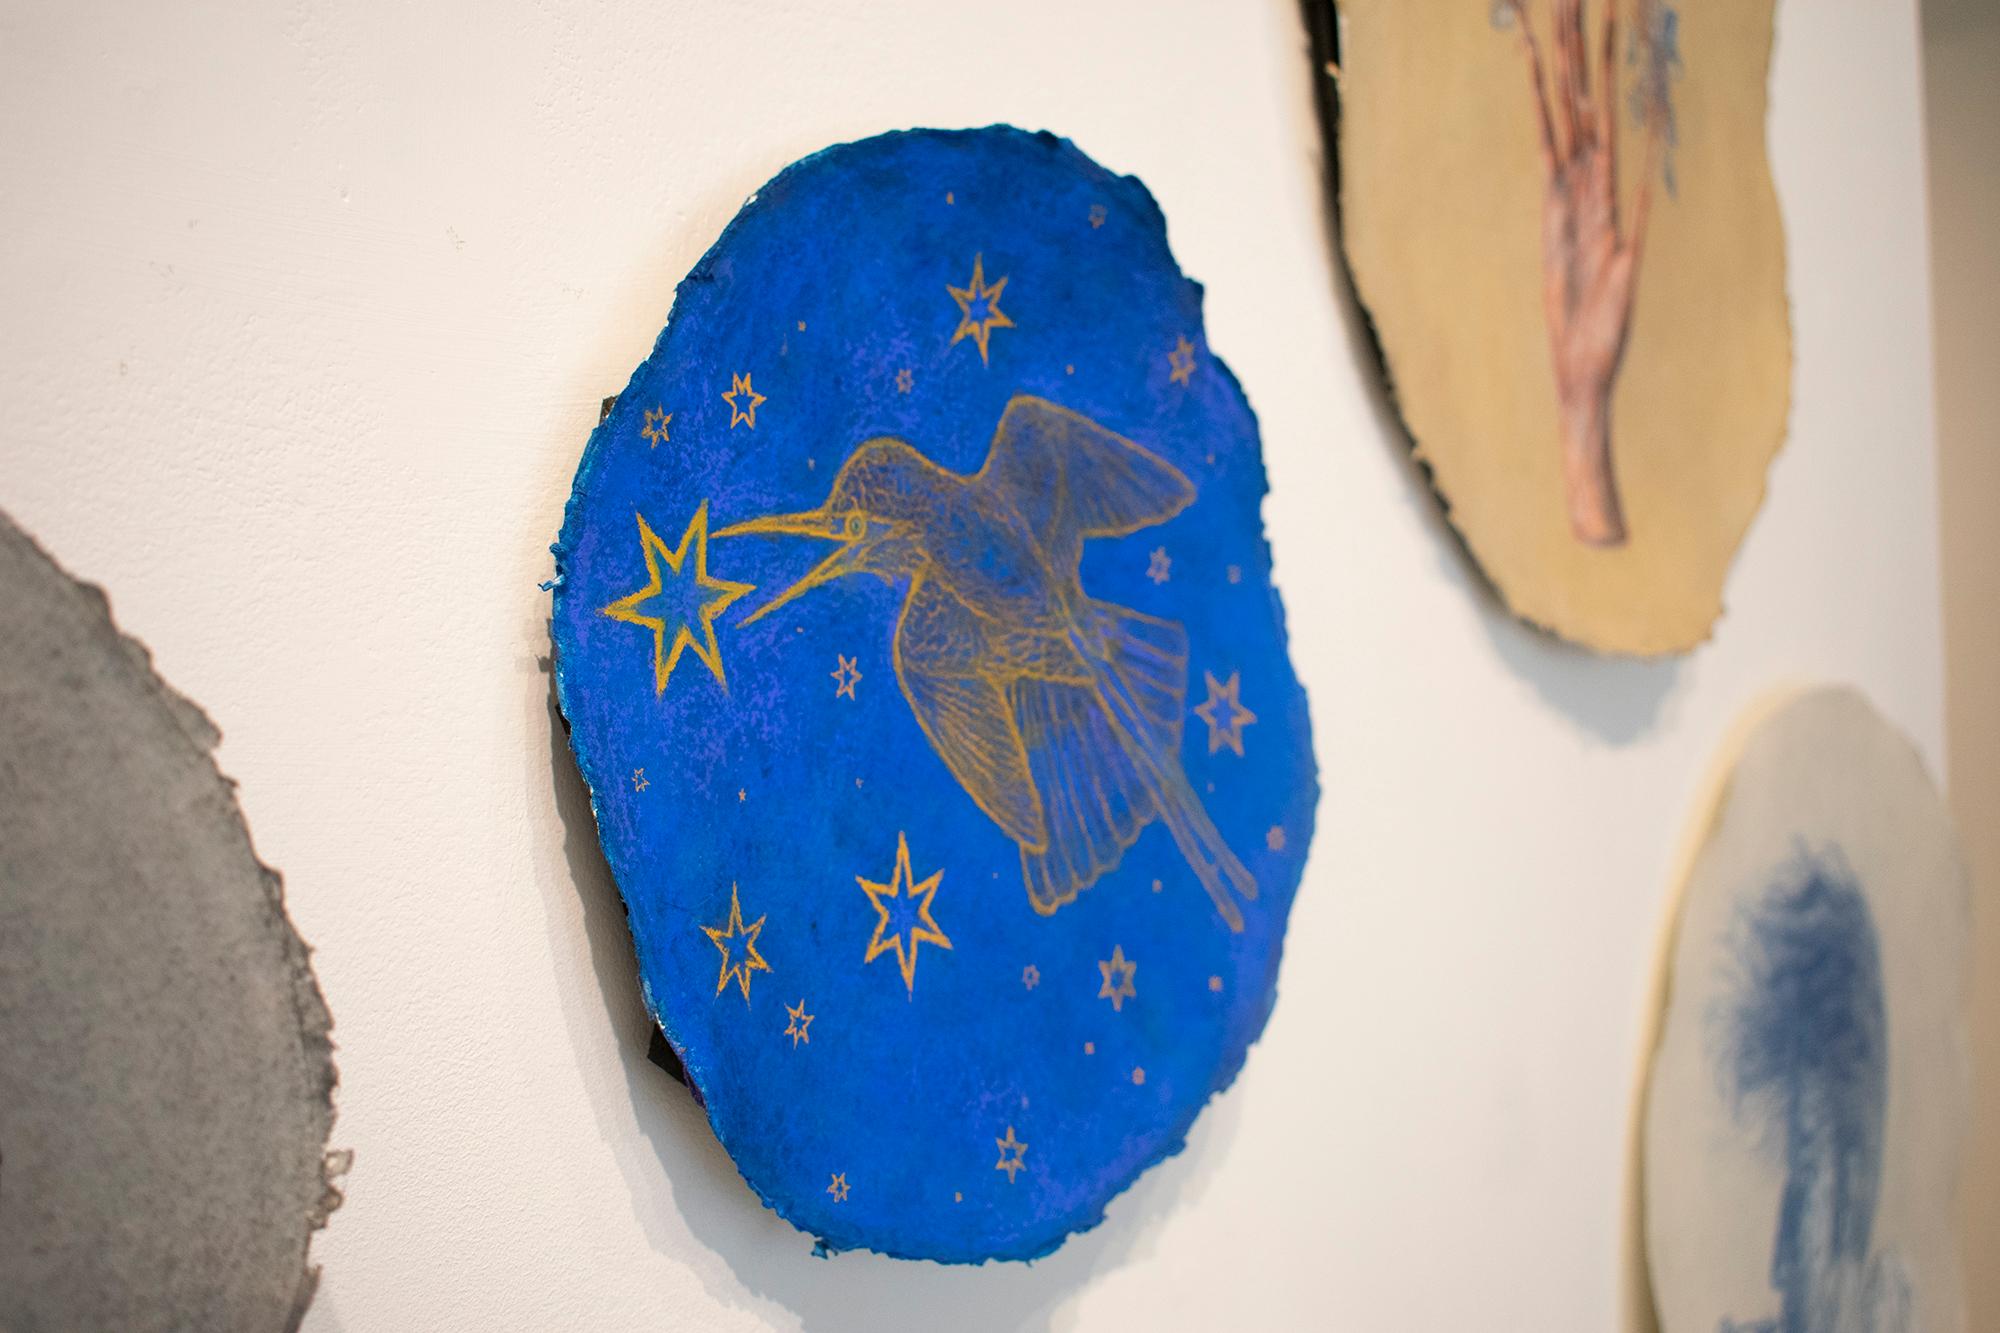 Hummingbird Augury: Kobaltblaue pastellfarbene Zeichnung auf handgeschöpftem Papier mit goldenen Sternen (Blau), Animal Painting, von Nicholas Kahn & Richard Selesnick